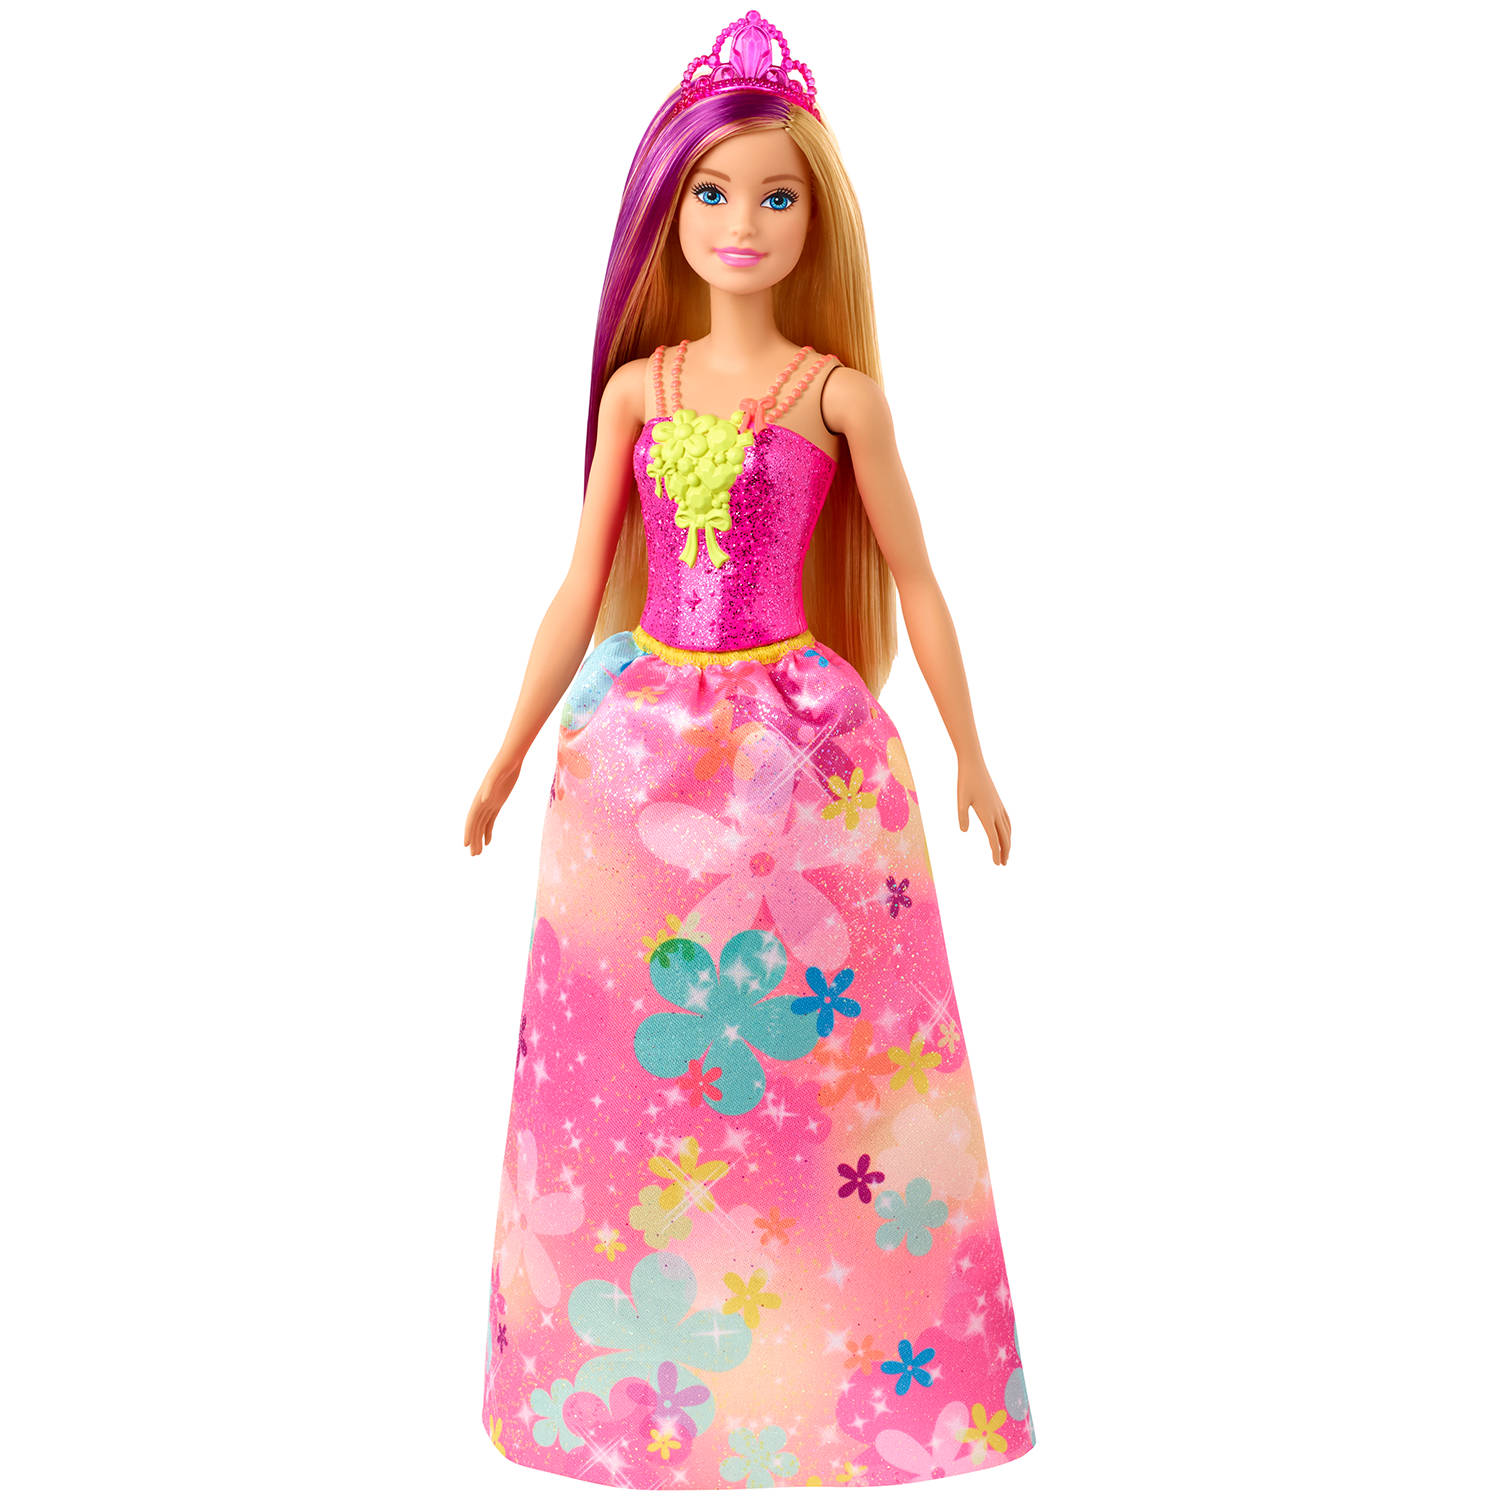 Smash Bijproduct Maak plaats Barbie Pop Dreamtopia Prinses Zwart Met Rood Haar bij Planet Happy